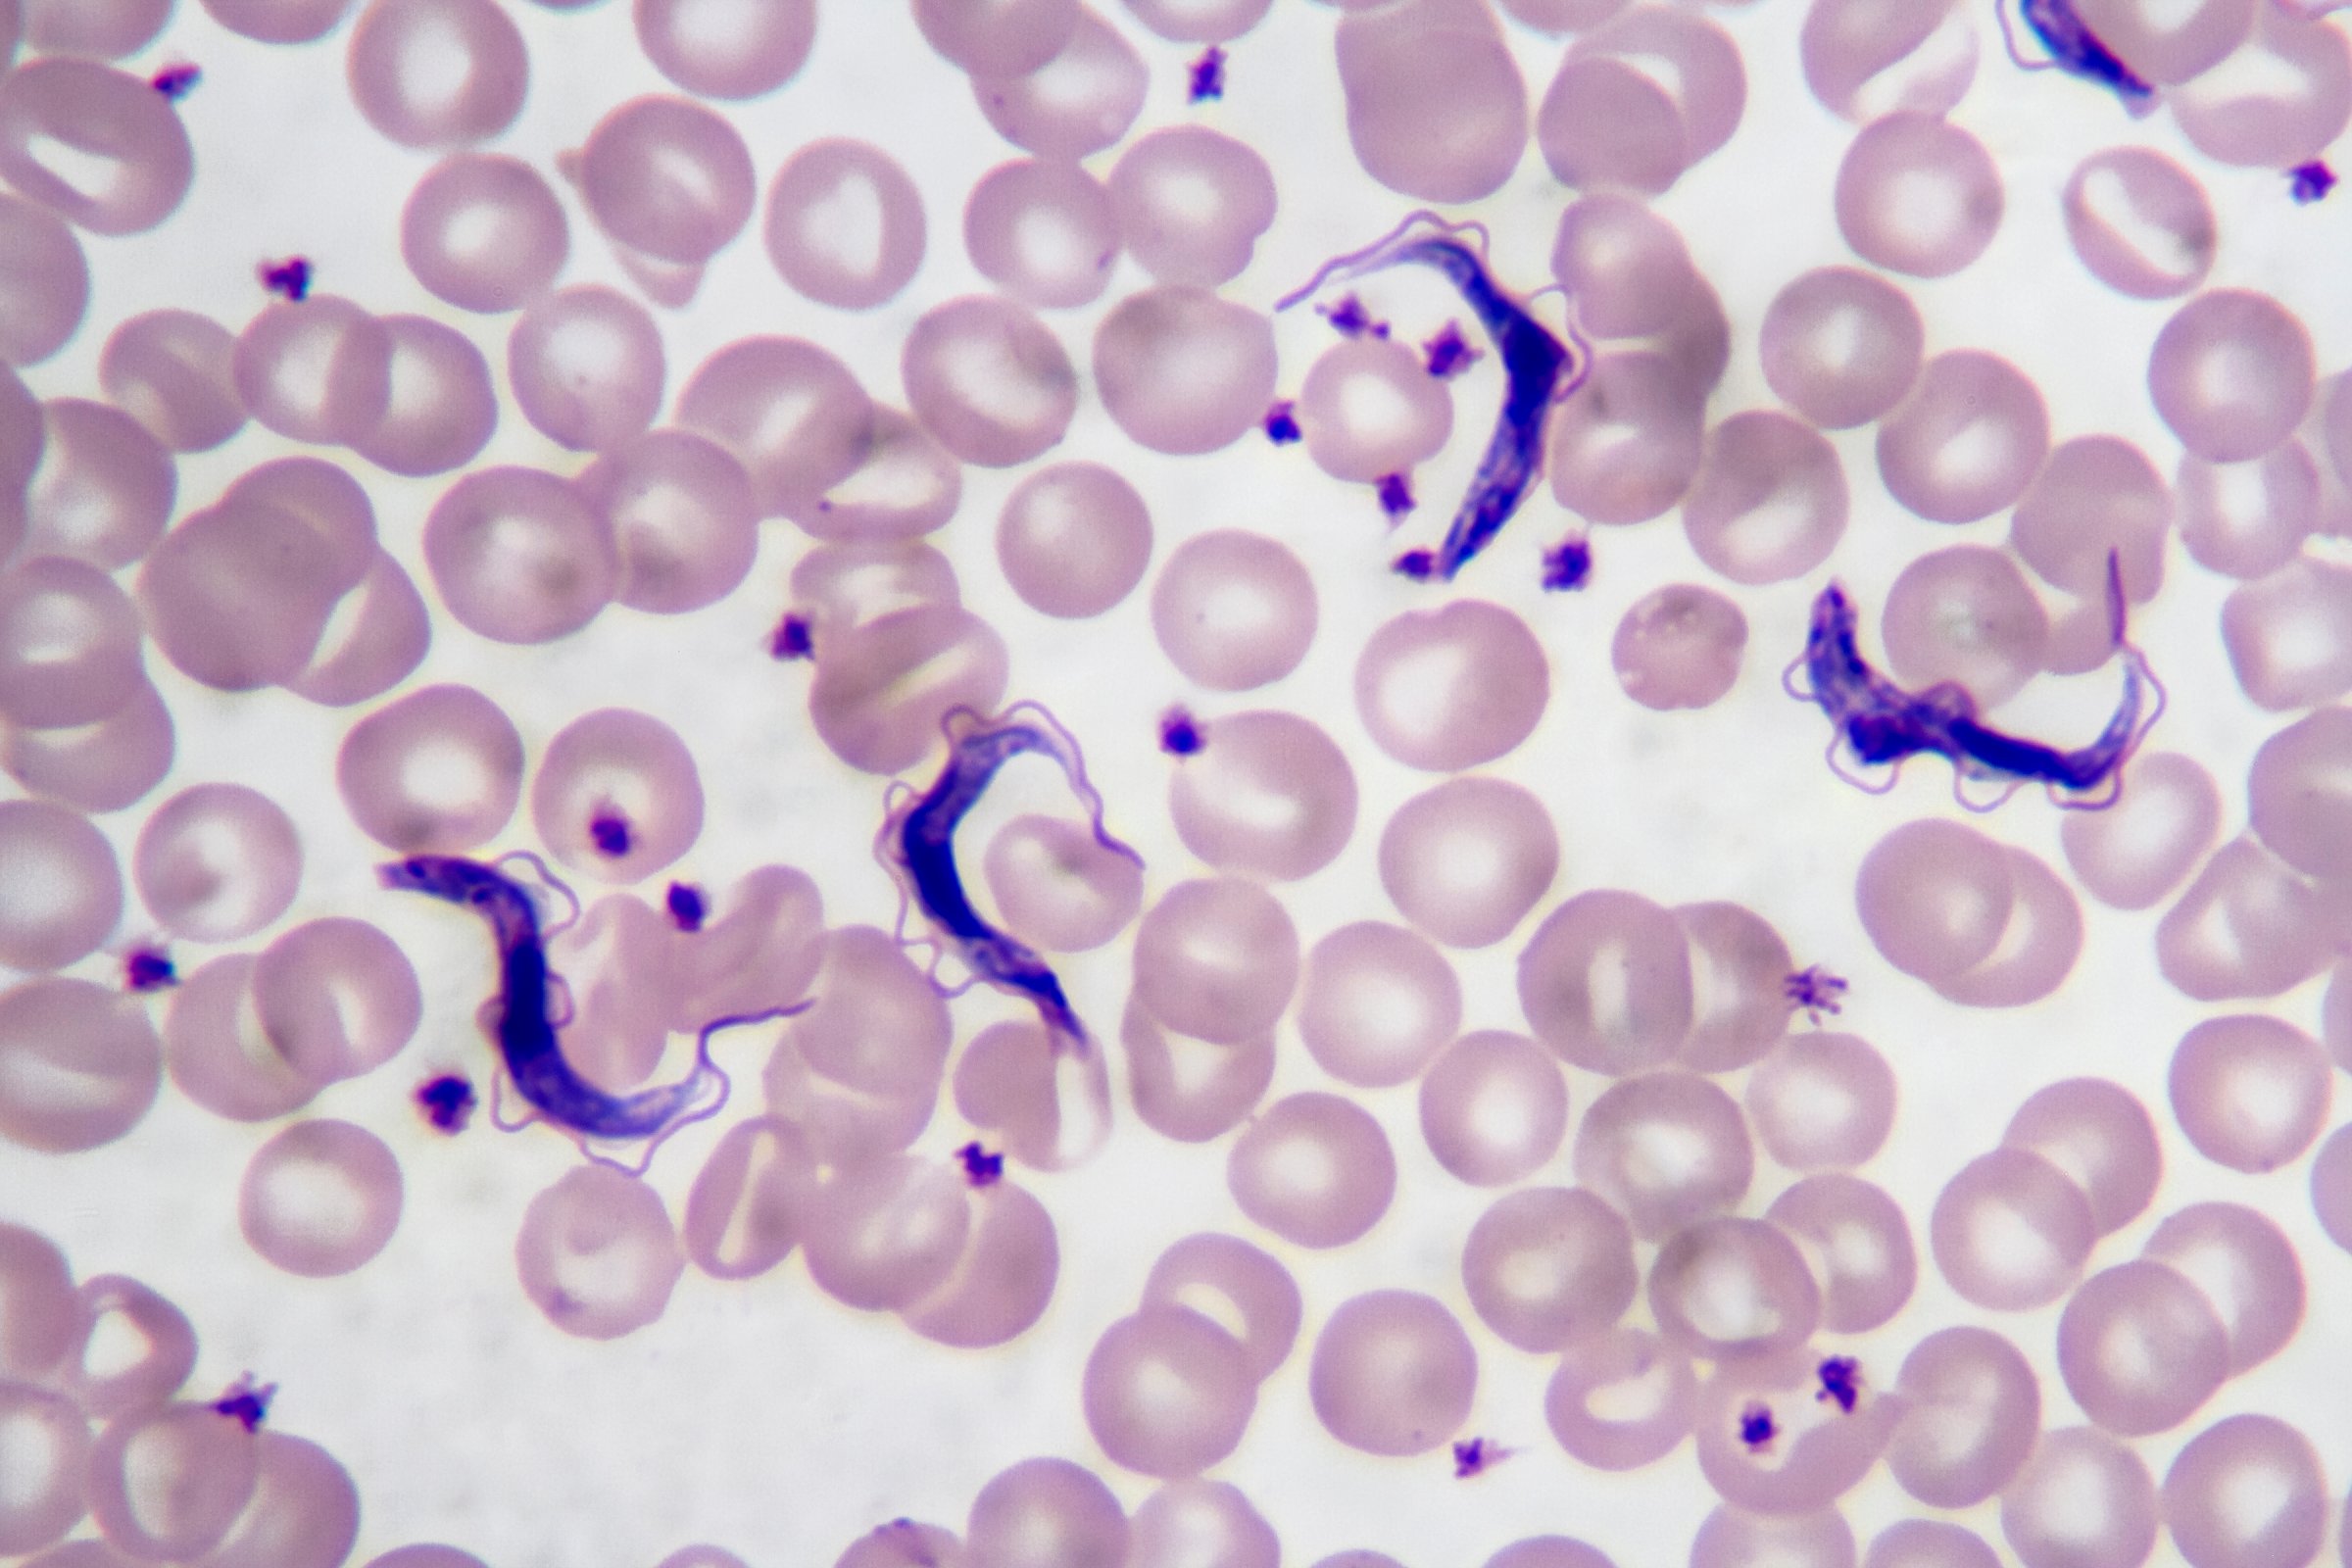 Parazitický prvok trypanosoma v krevním nátěru pod mikroskopem – blood smear / Shutterstock